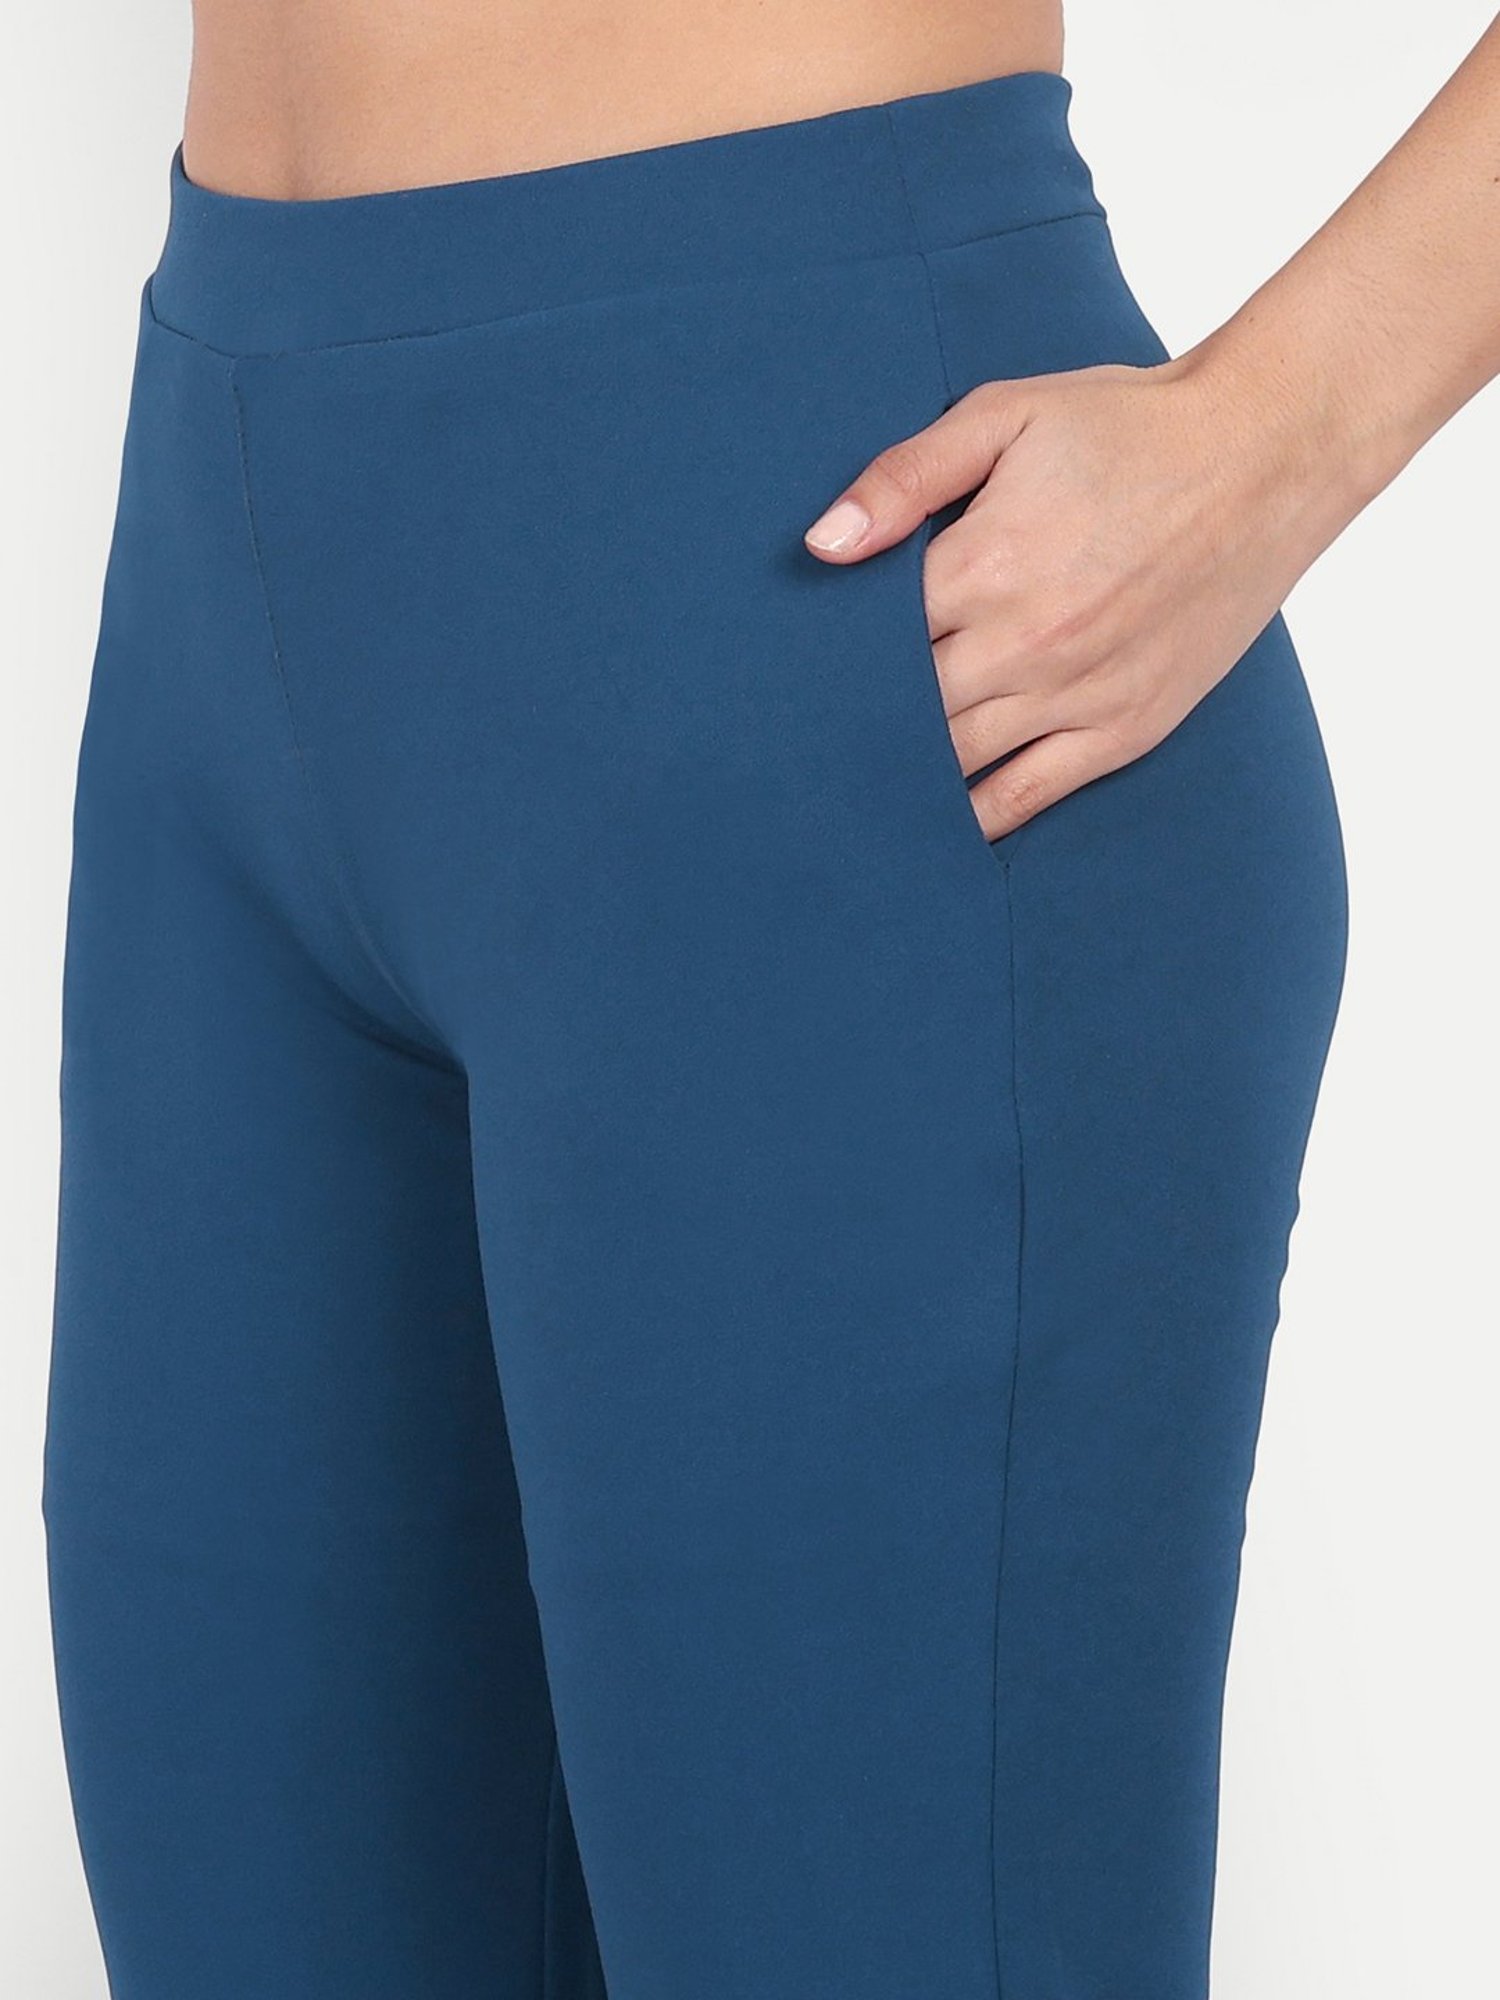 Women's Blue Trousers | Boden UK